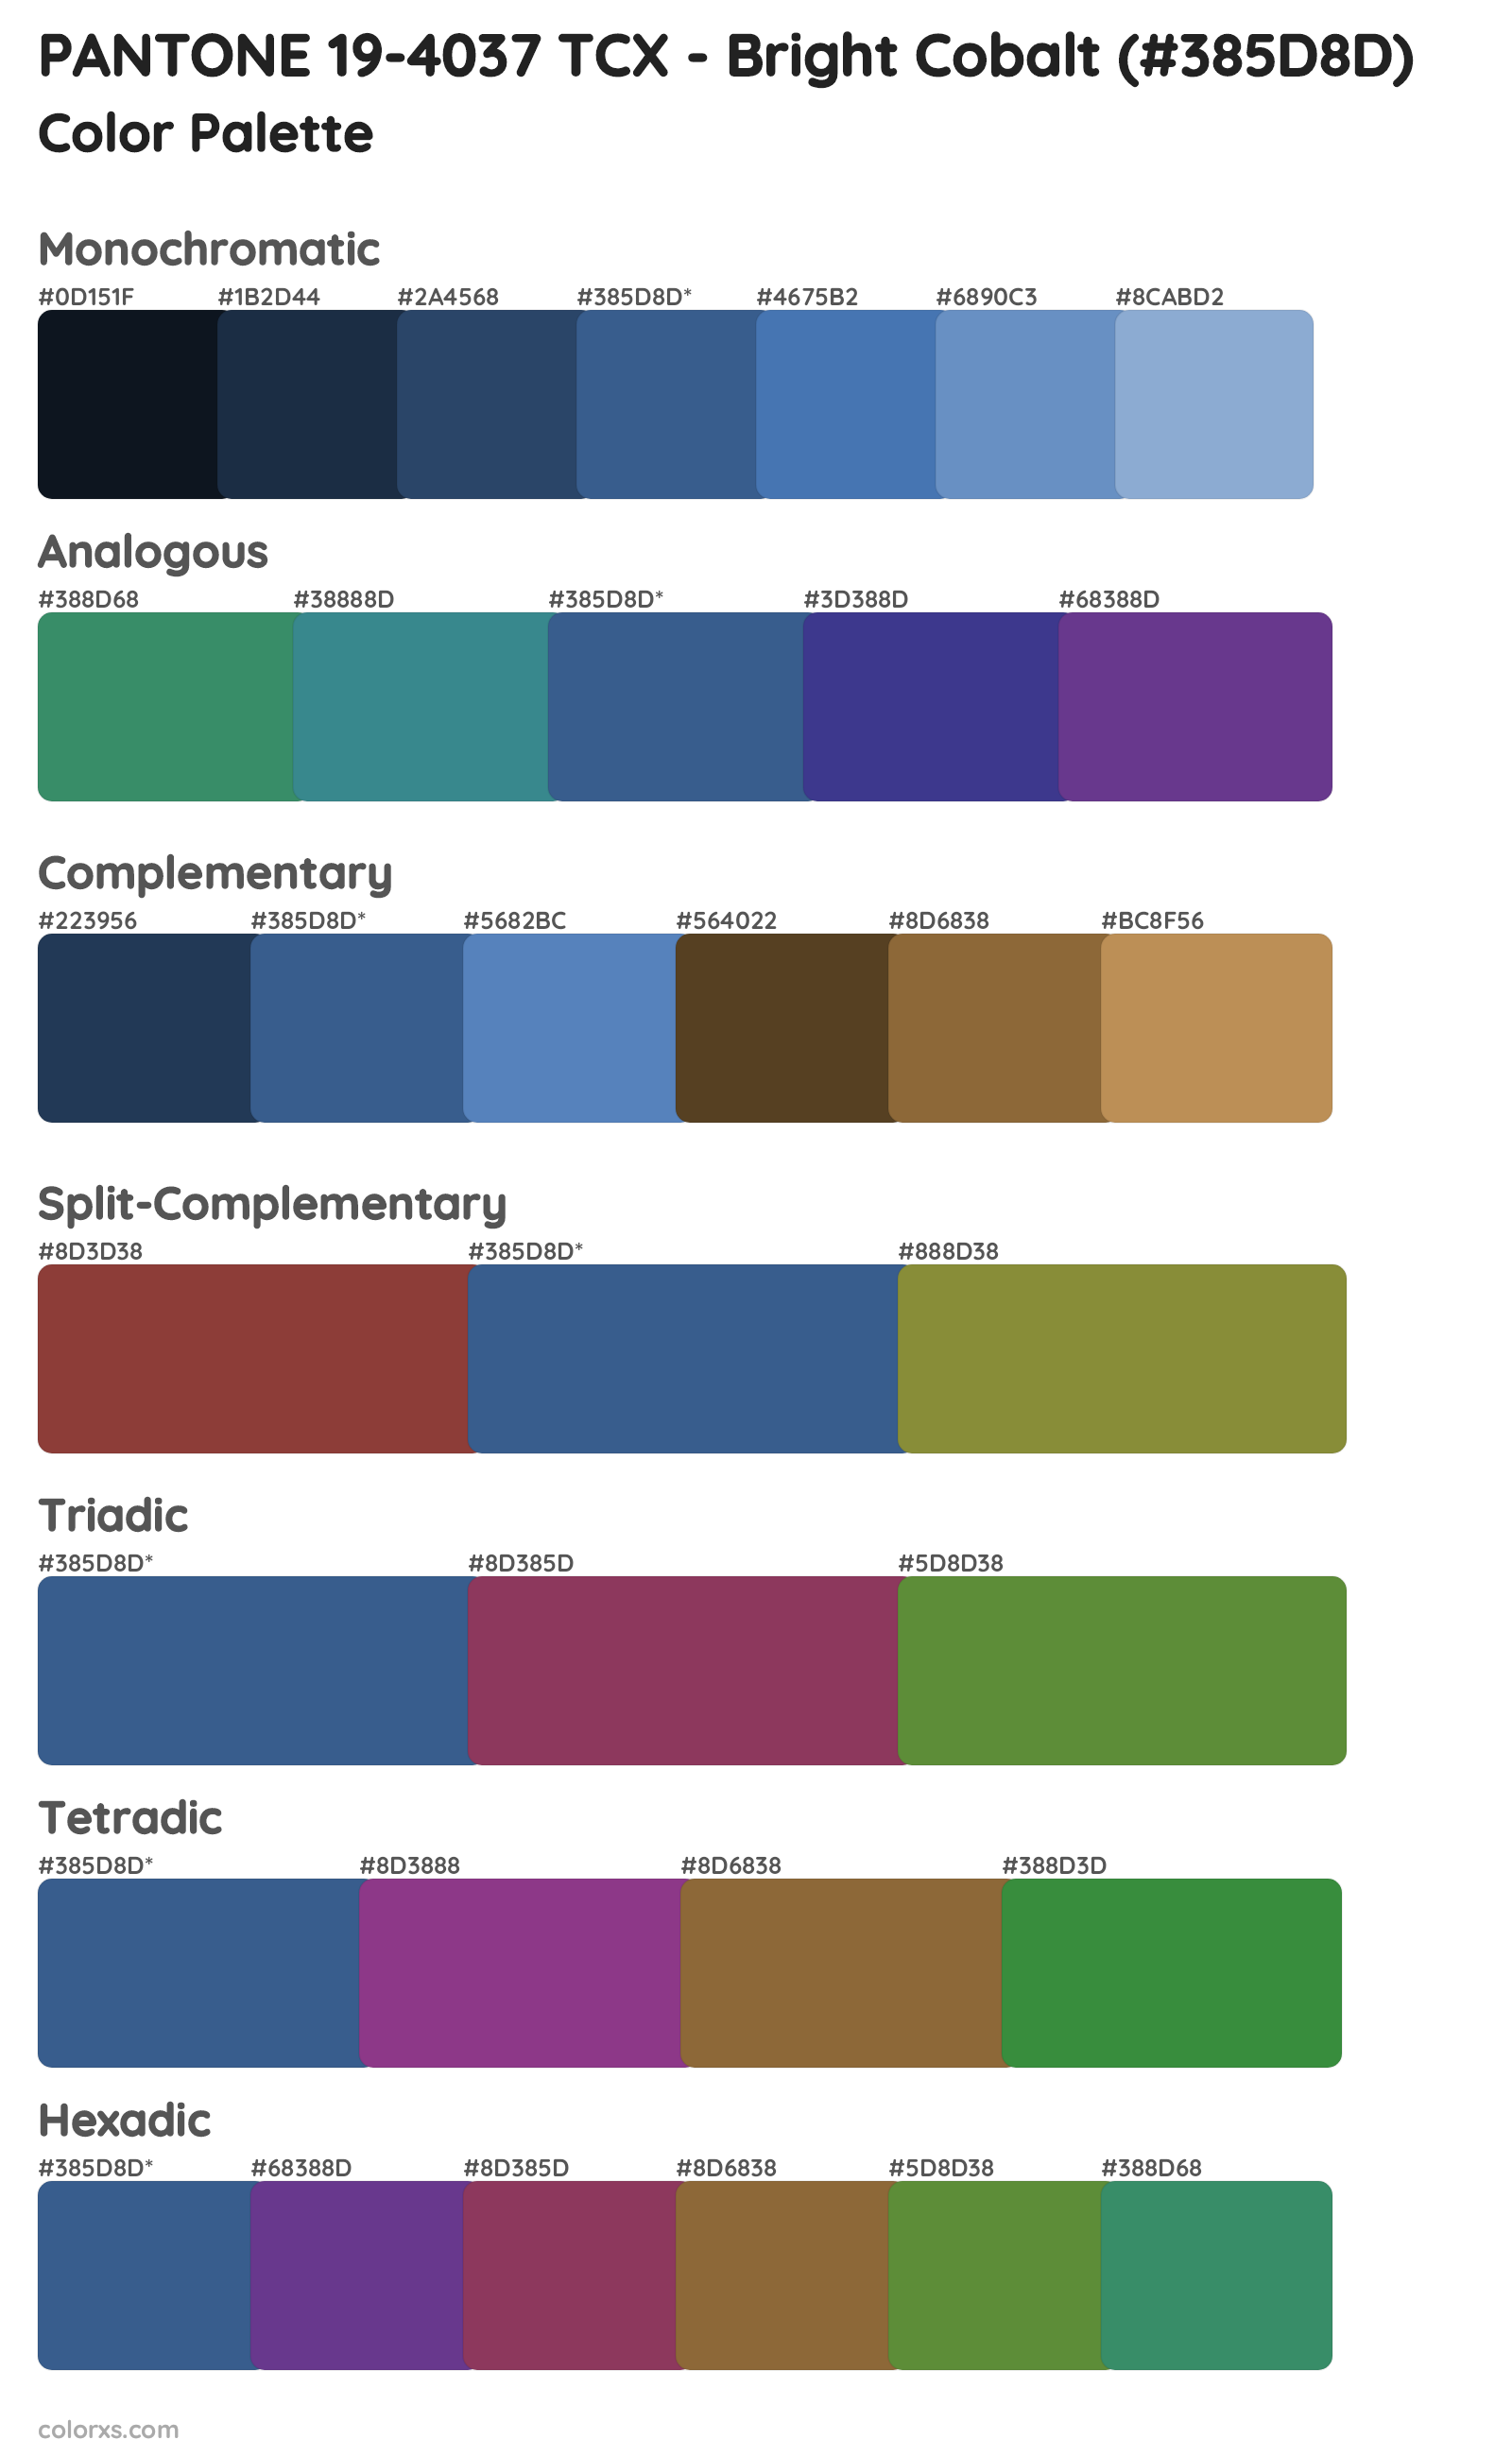 PANTONE 19-4037 TCX - Bright Cobalt Color Scheme Palettes